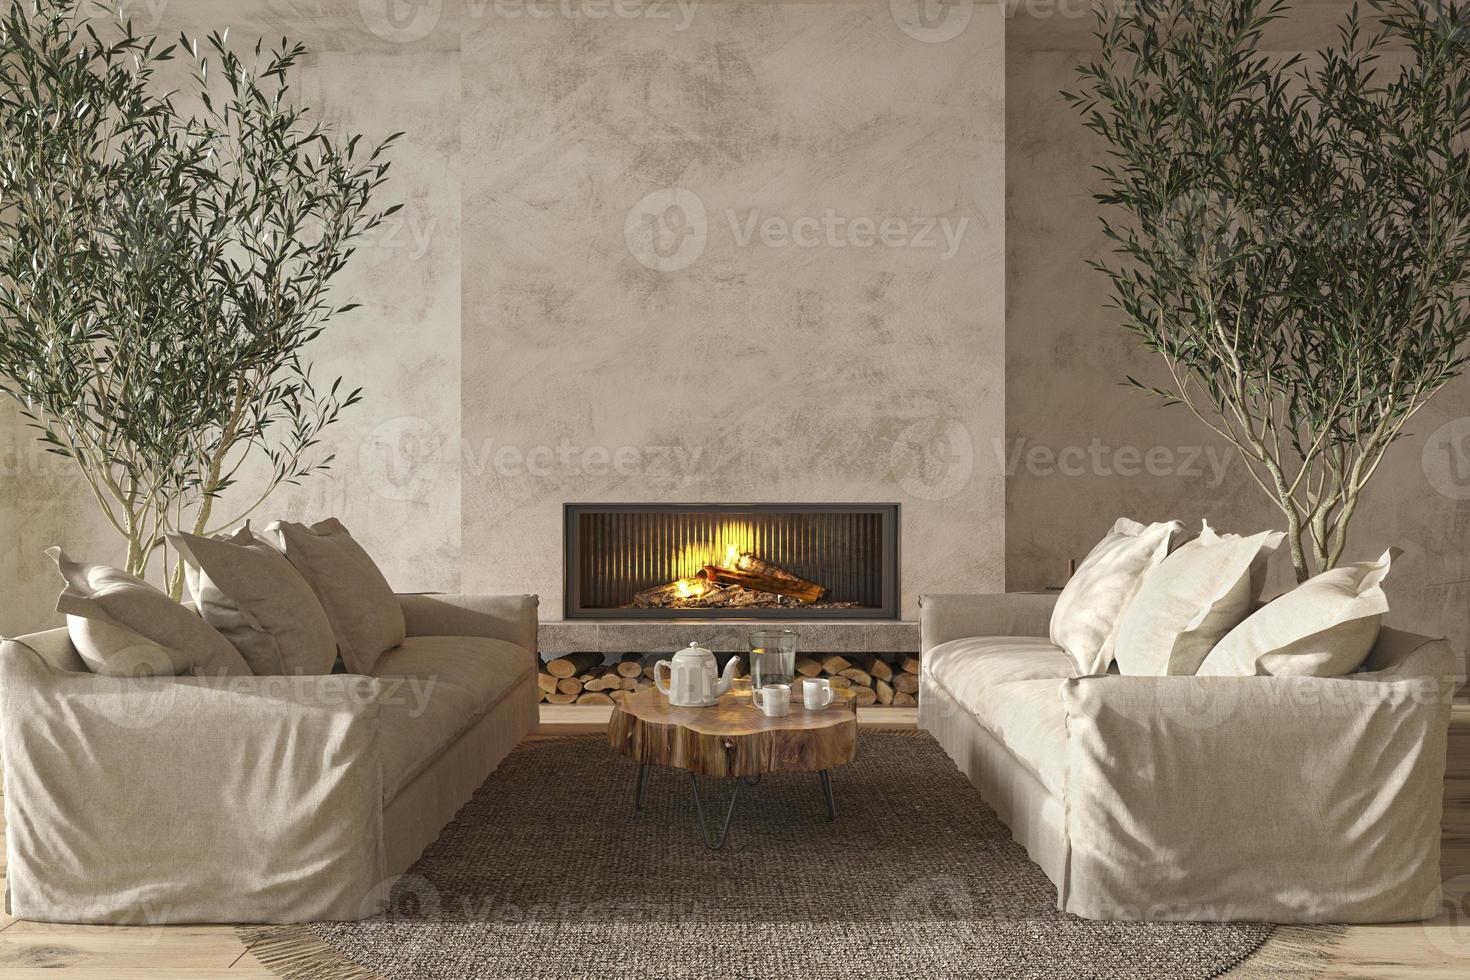 Interior de la sala de estar de estilo casa de campo escandinavo con muebles de madera natural y chimenea Ilustración de render 3d foto